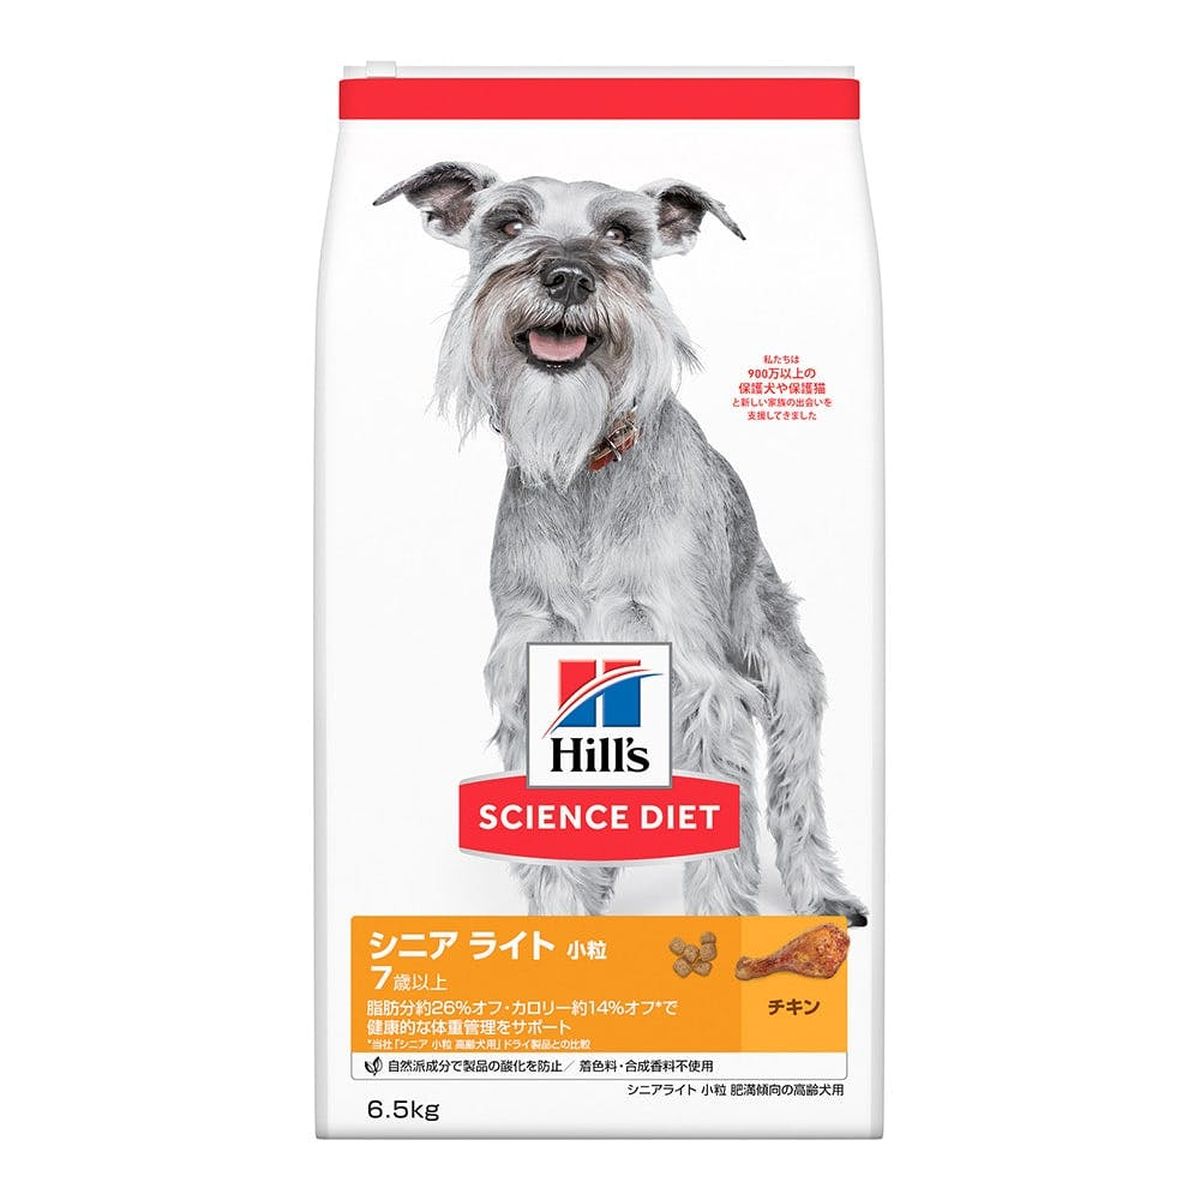 【送料無料】日本ヒルズ・コルゲート サイエンスダイエット シニアライト 小粒 肥満傾向の高齢犬用 6.5ｋg